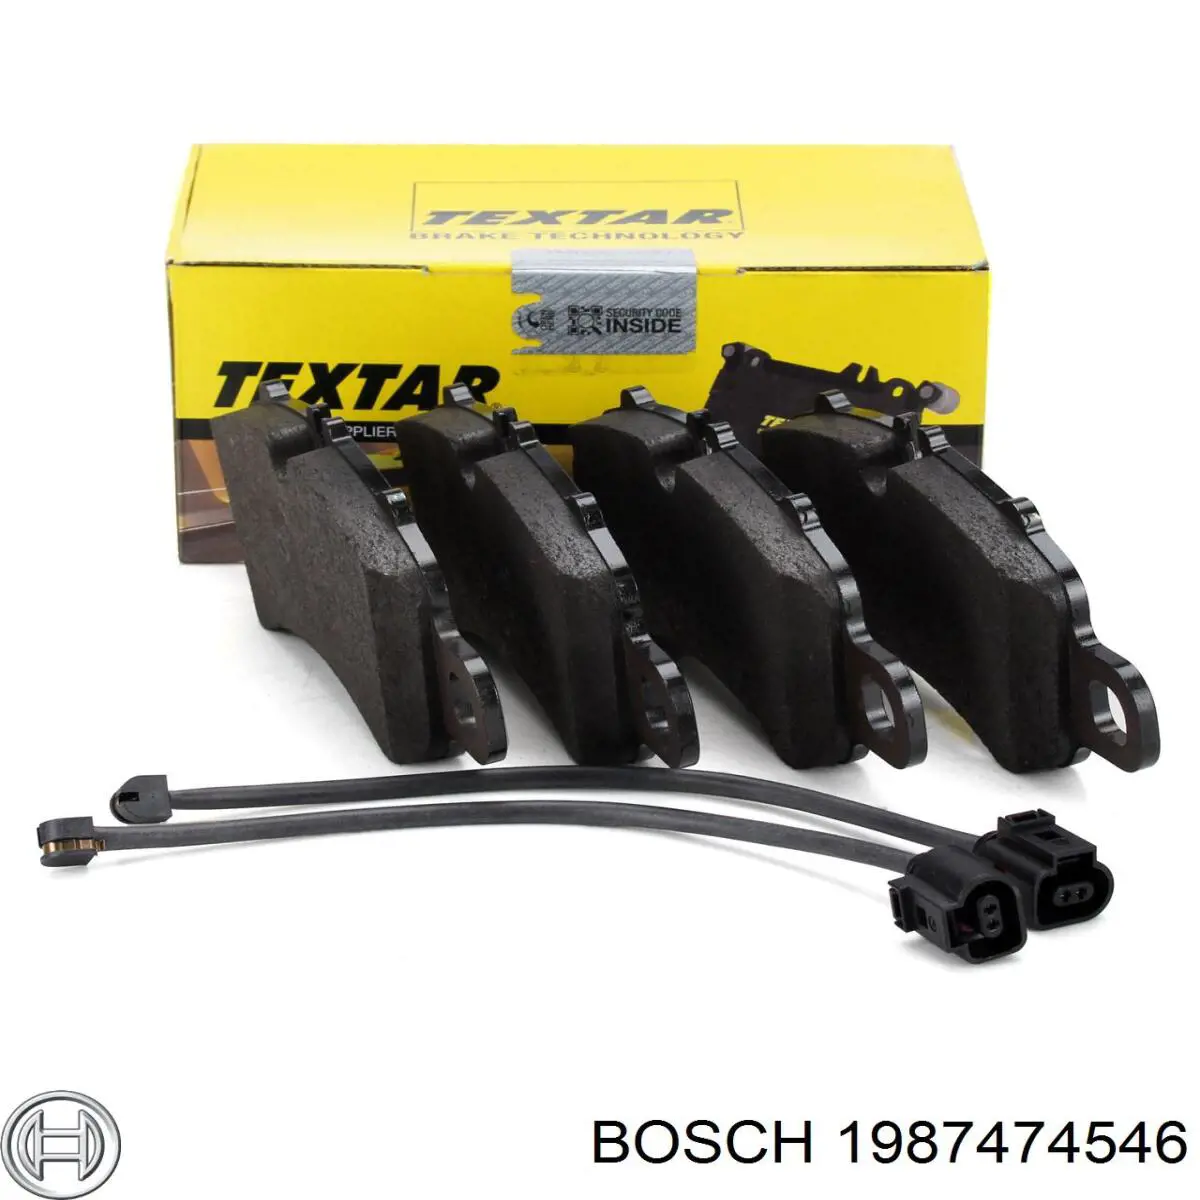 1987474546 Bosch